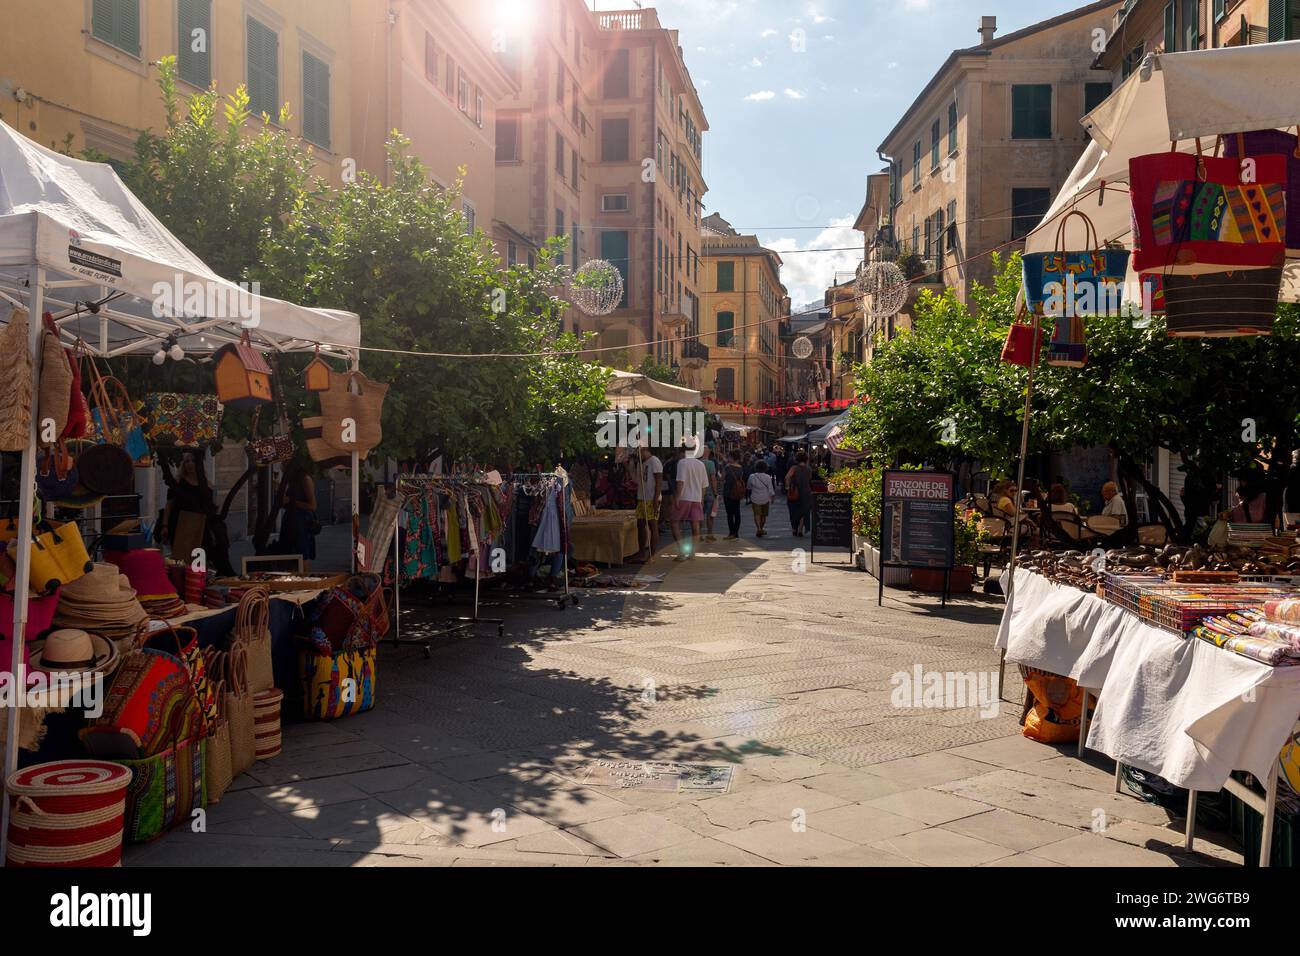 Hinterleuchtung mit Objektivfackeln auf den Straßenmarkt während des Festes unserer Lieben Frau von Montallegro, Rapallo, Genua, Ligurien, Italien Stockfoto